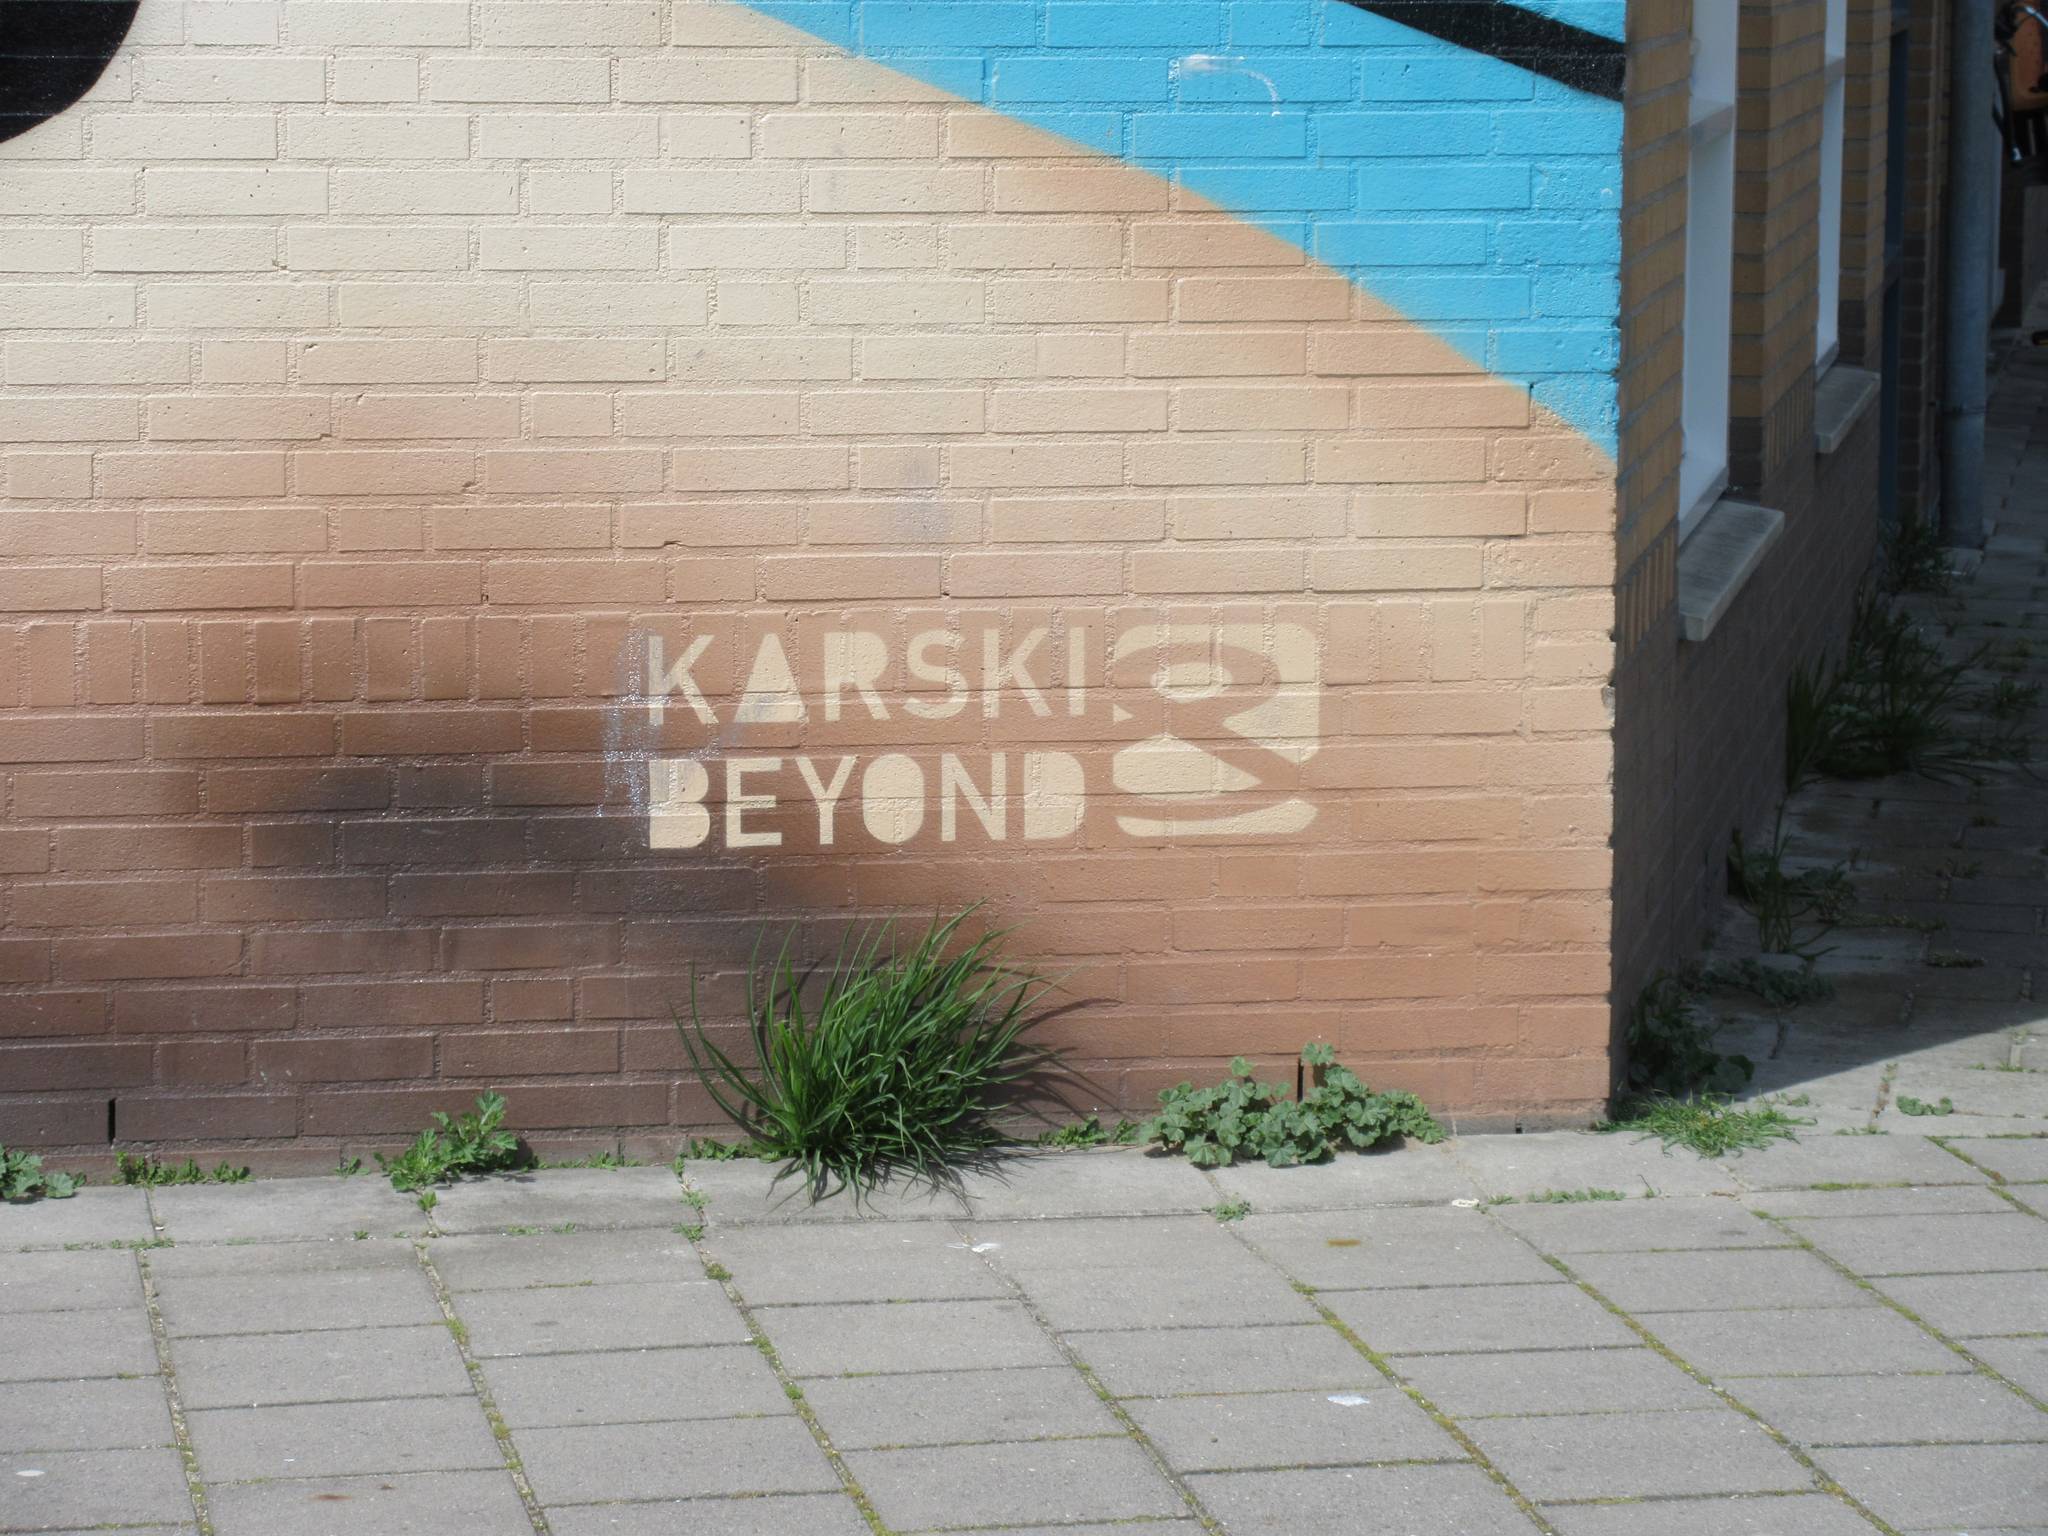 Karski, Beyond&mdash;Untitled